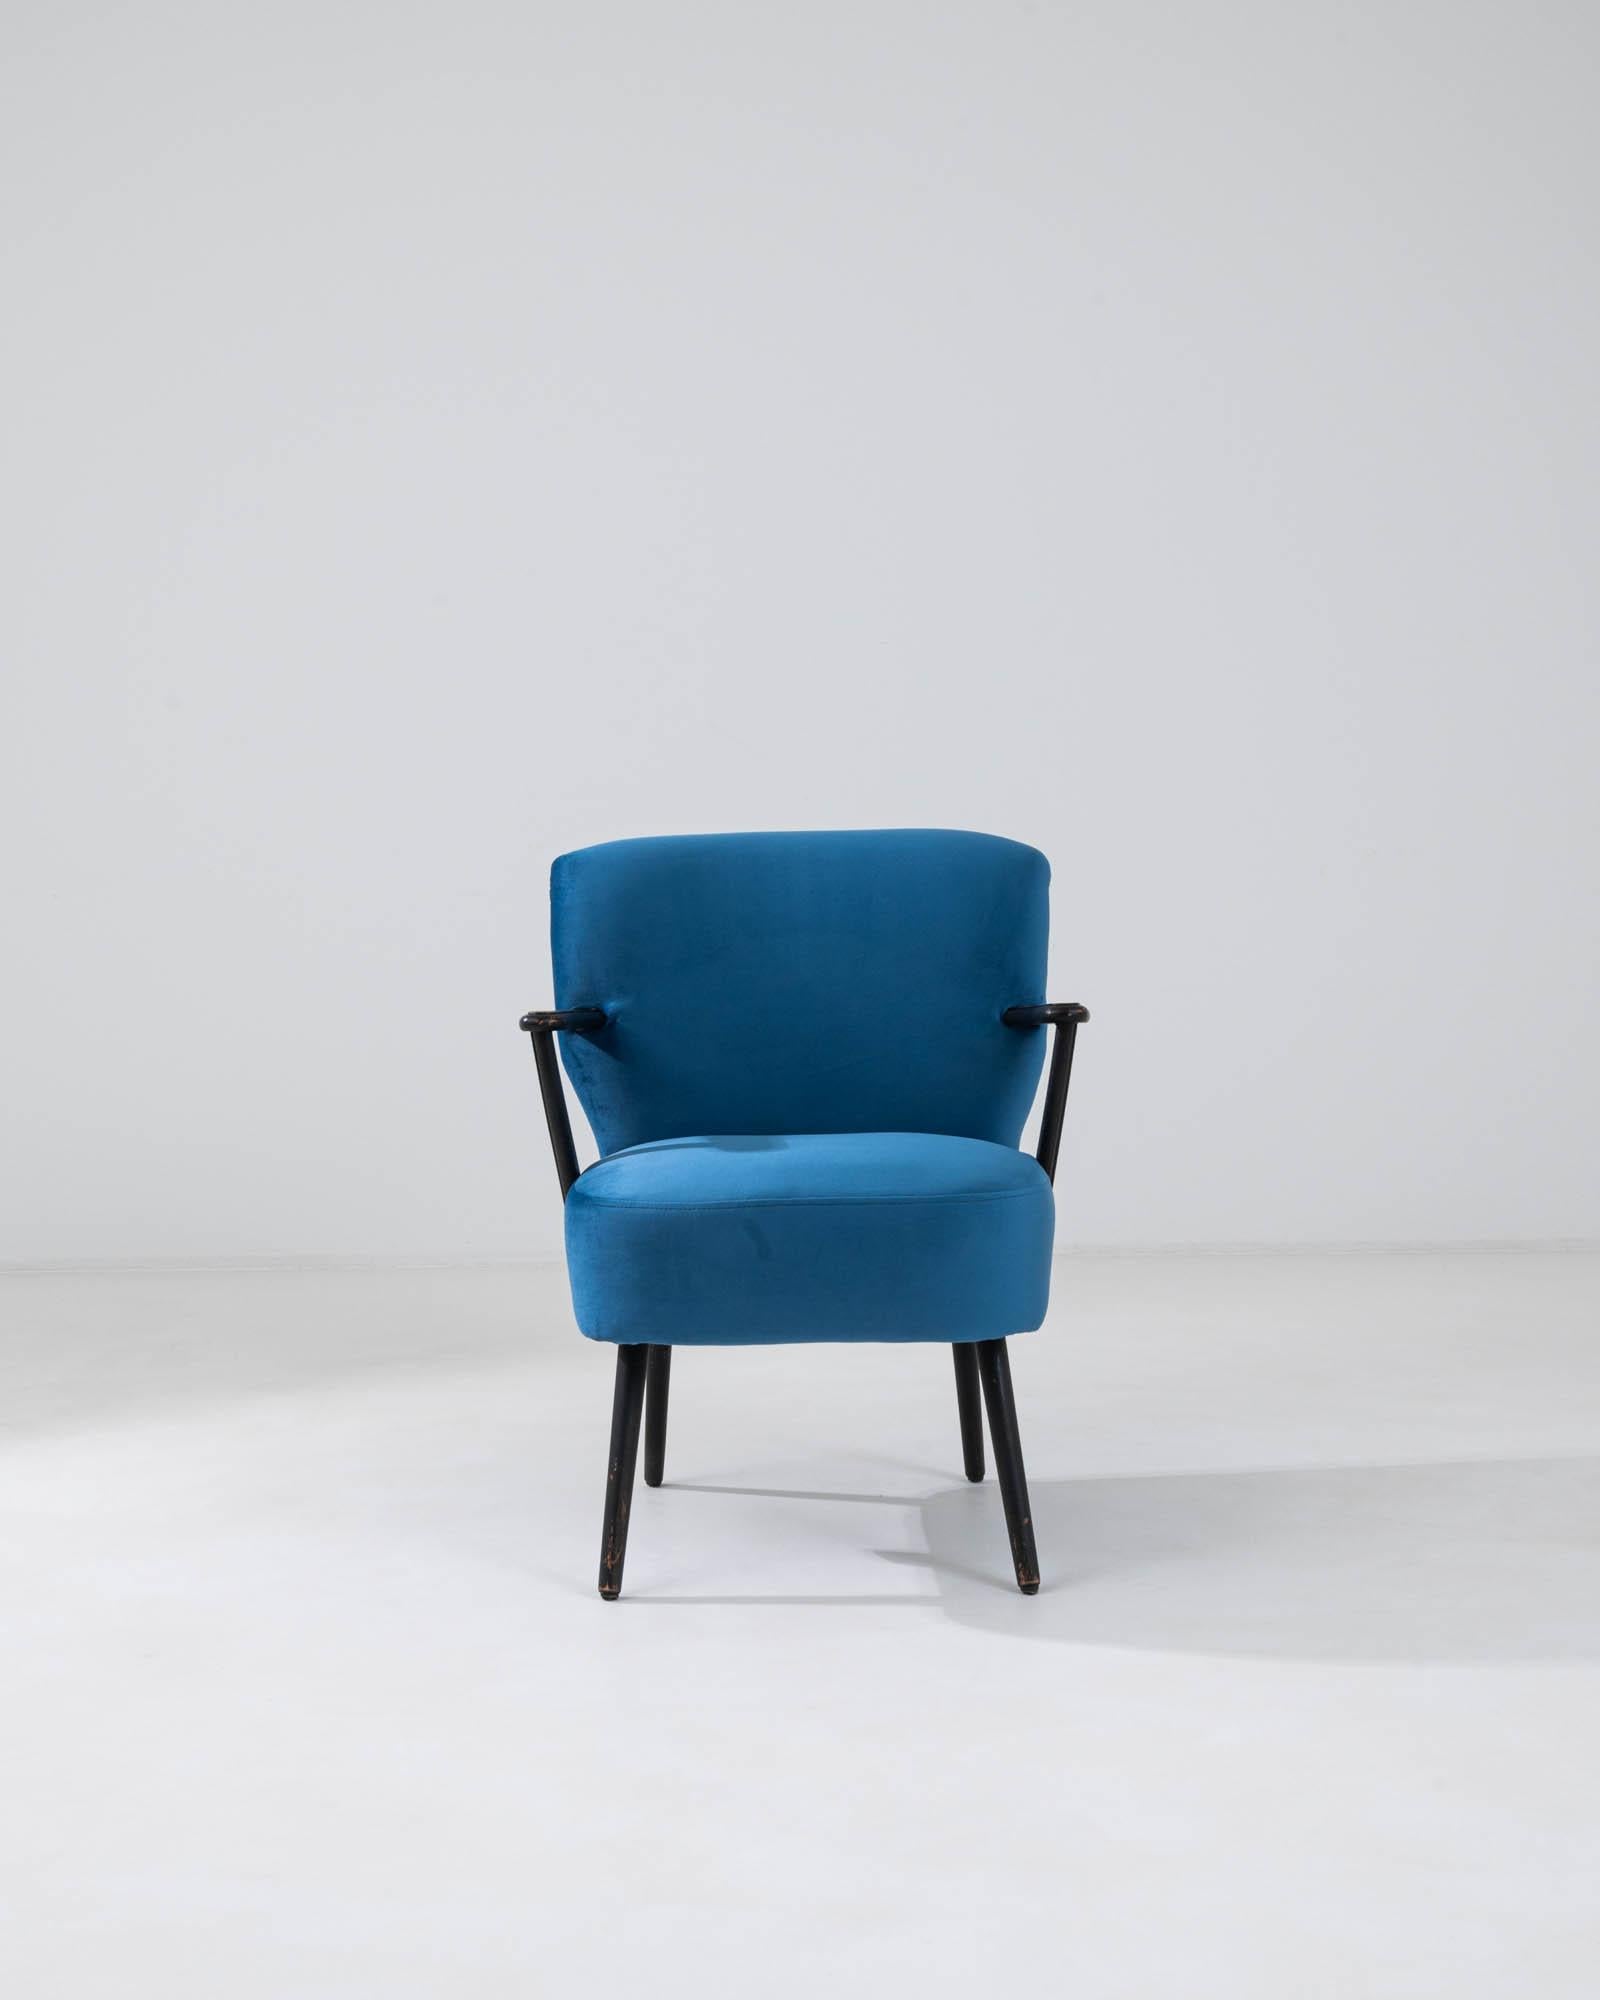 Ce fauteuil rembourré danois du 20e siècle, qui allie habilement le design du milieu du siècle au confort contemporain, rehausse votre espace d'une allure vibrante. Habillé d'un bleu saisissant, le tissu de la chaise est à la fois une déclaration